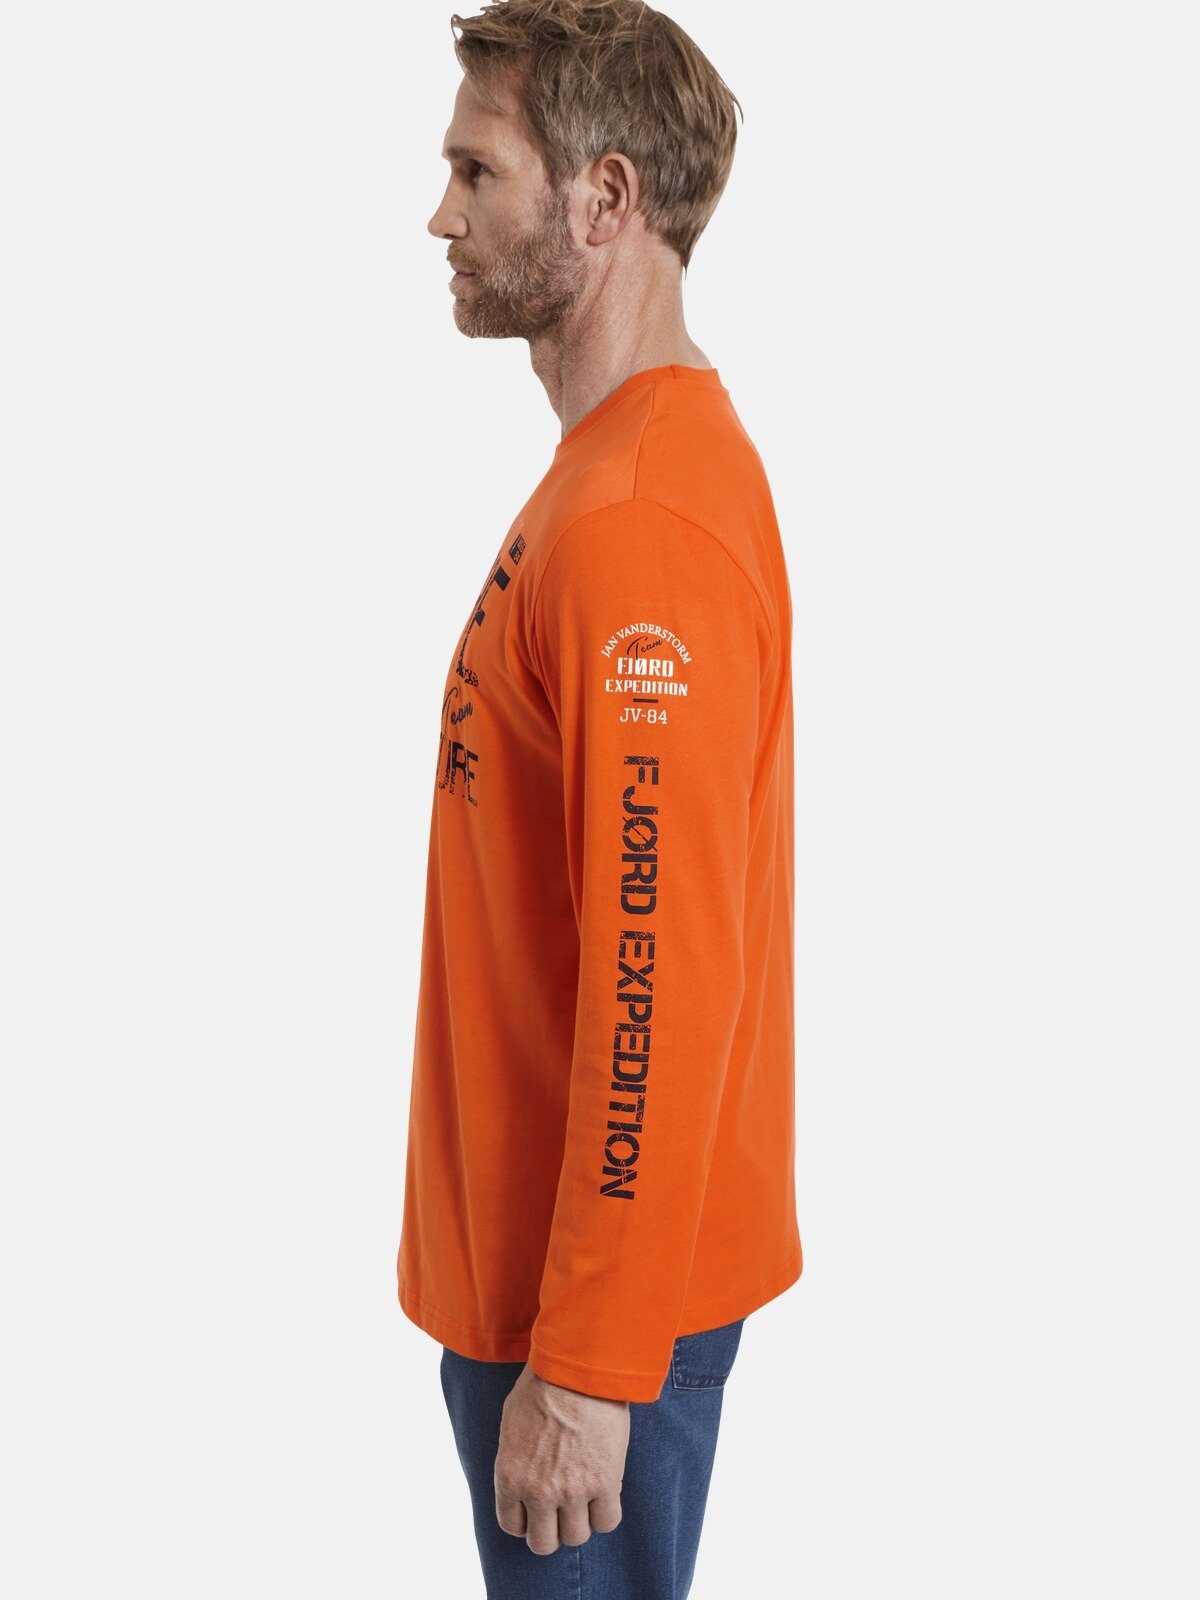 Entdecker ELION Jan Vanderstorm Langarmshirt Langarmshirt, Print orange